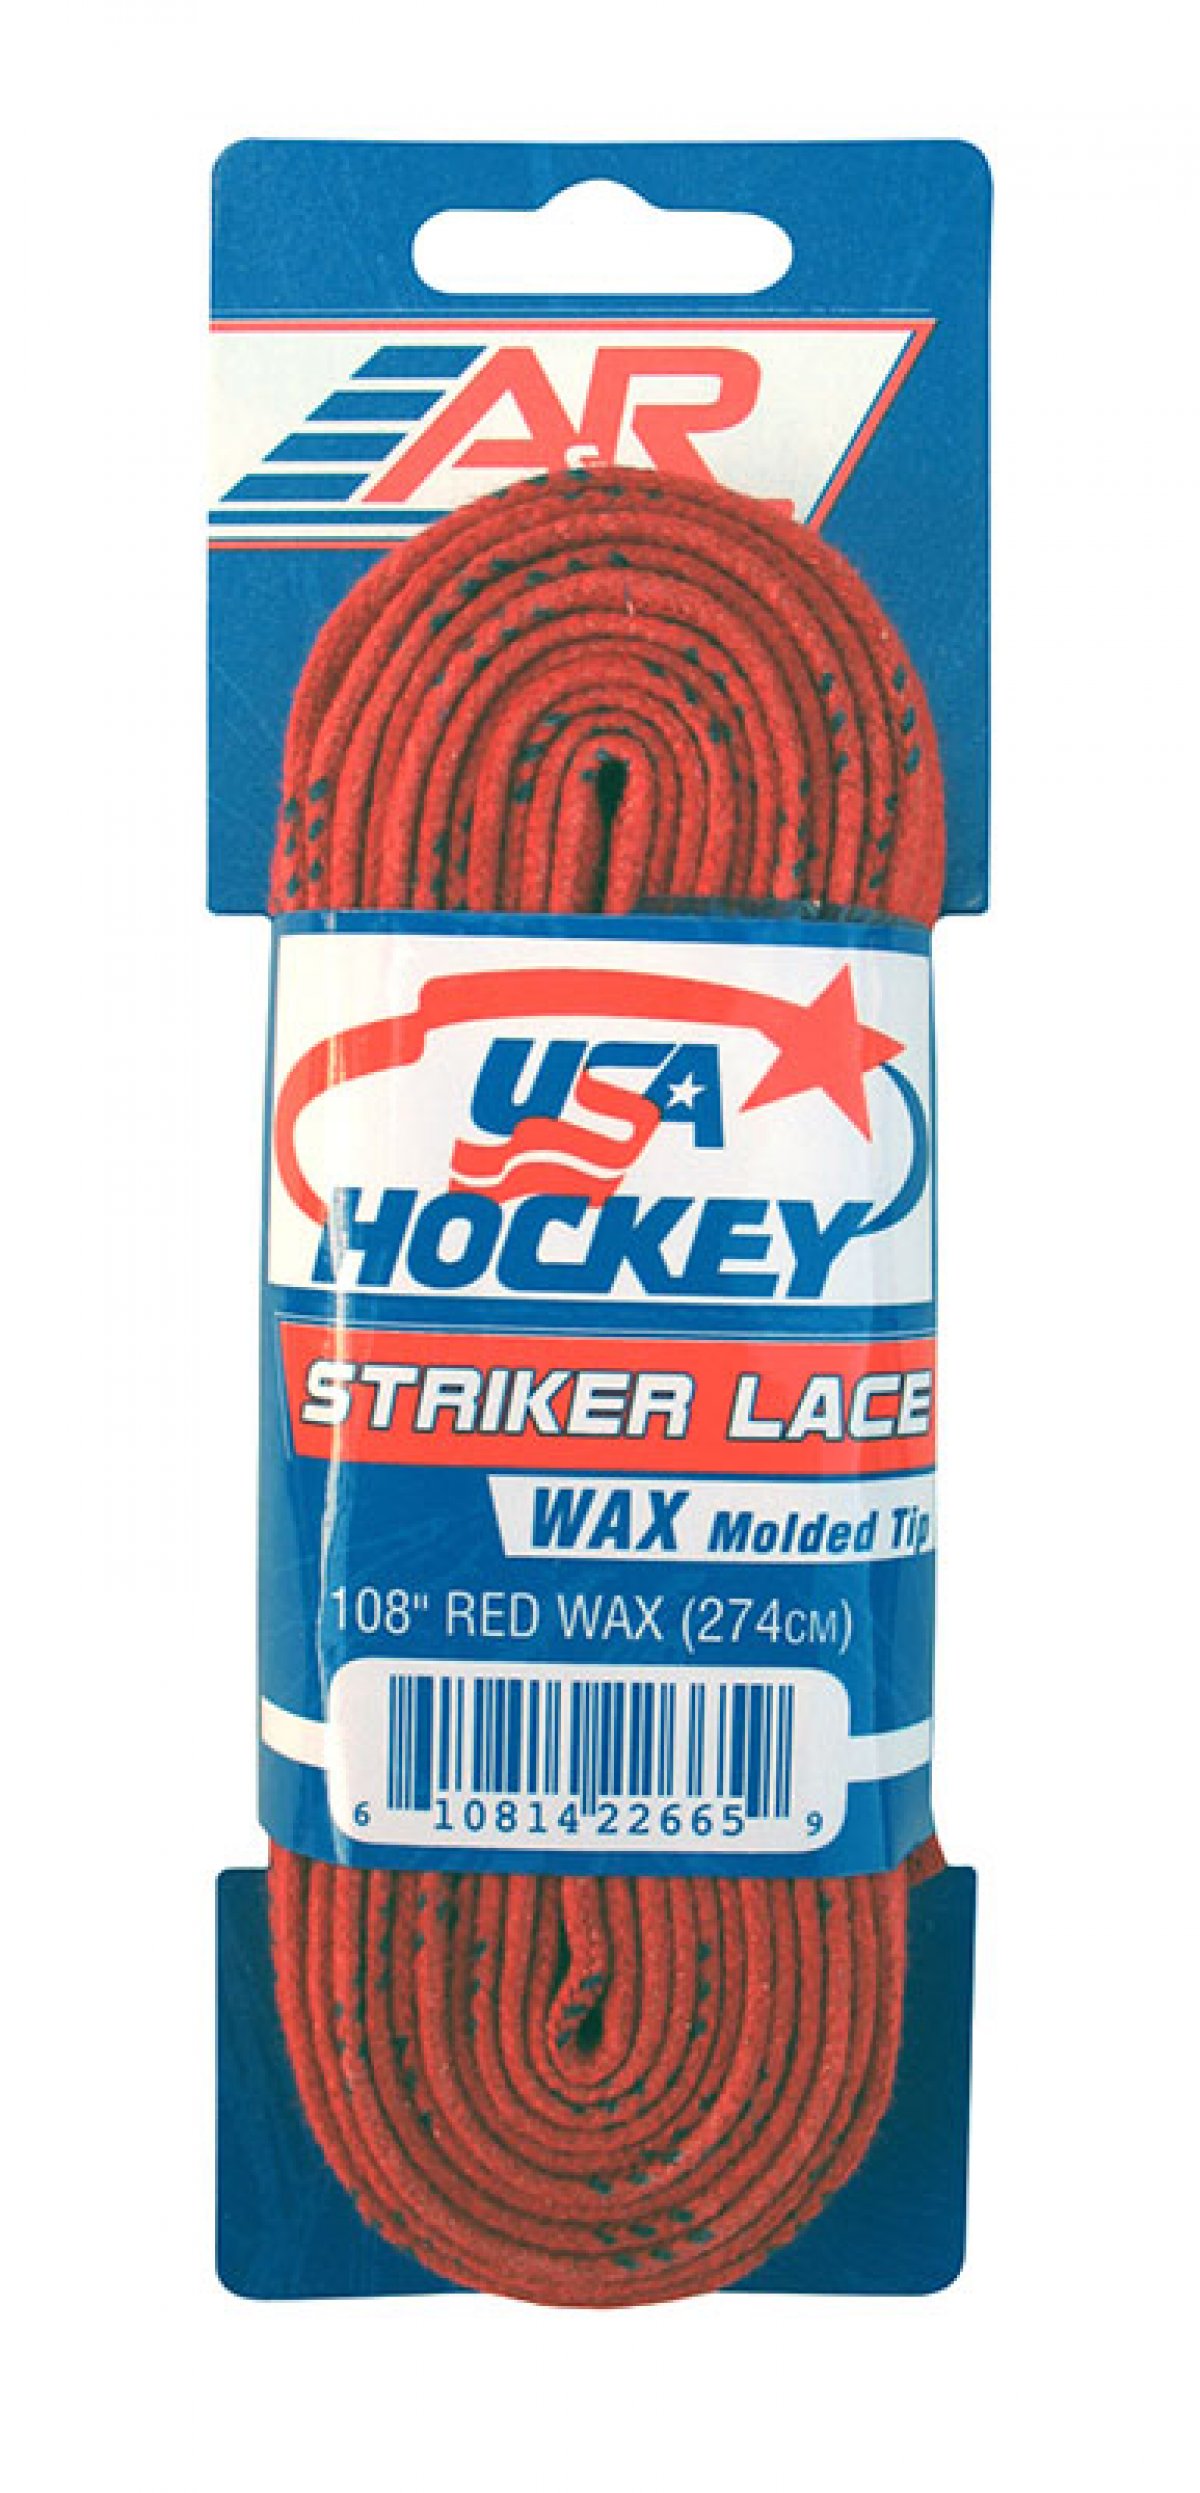    A&R USA Hockey